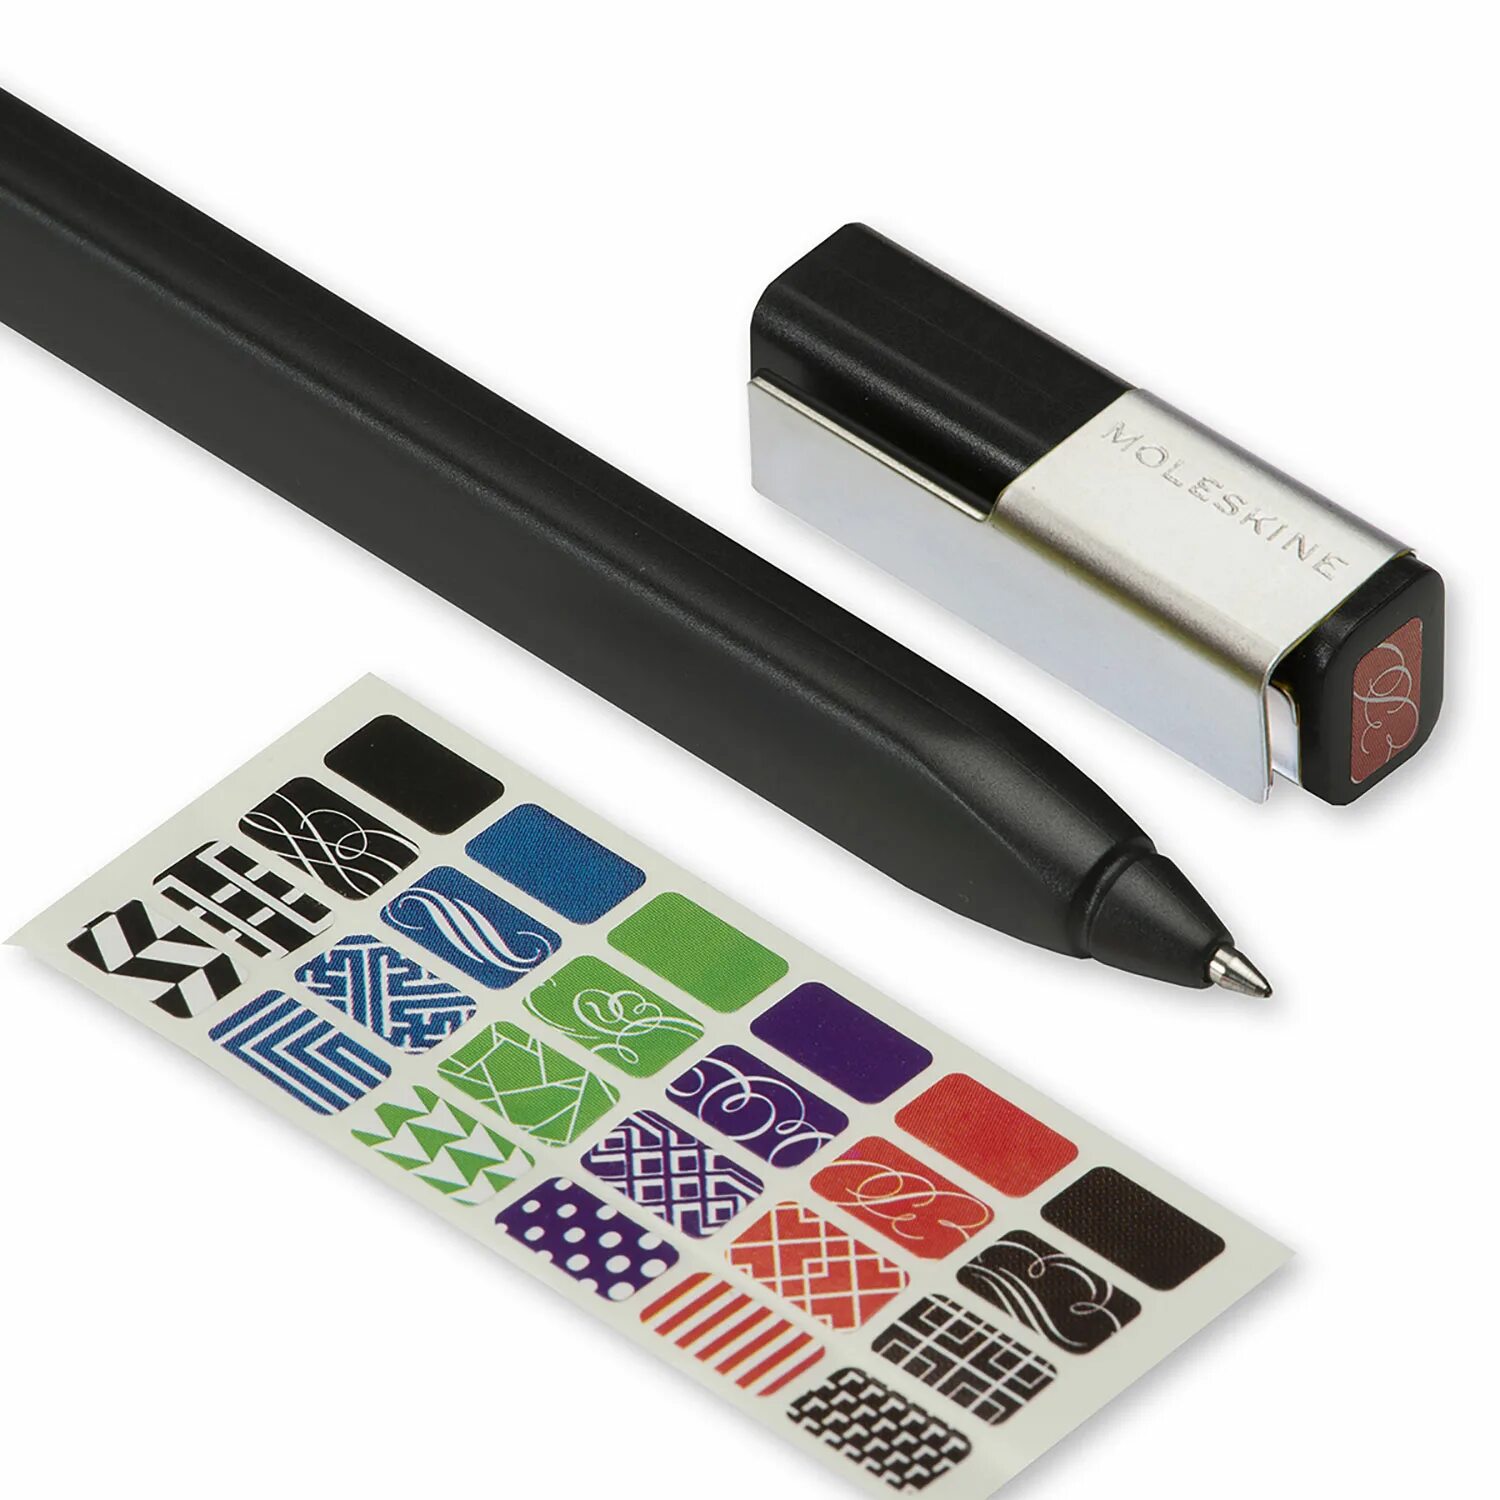 Ручка роллер Молескин. Moleskine ручка. Карандаш Moleskine click (0,7 мм), серый. Ручка Молескин красная. Pens plus